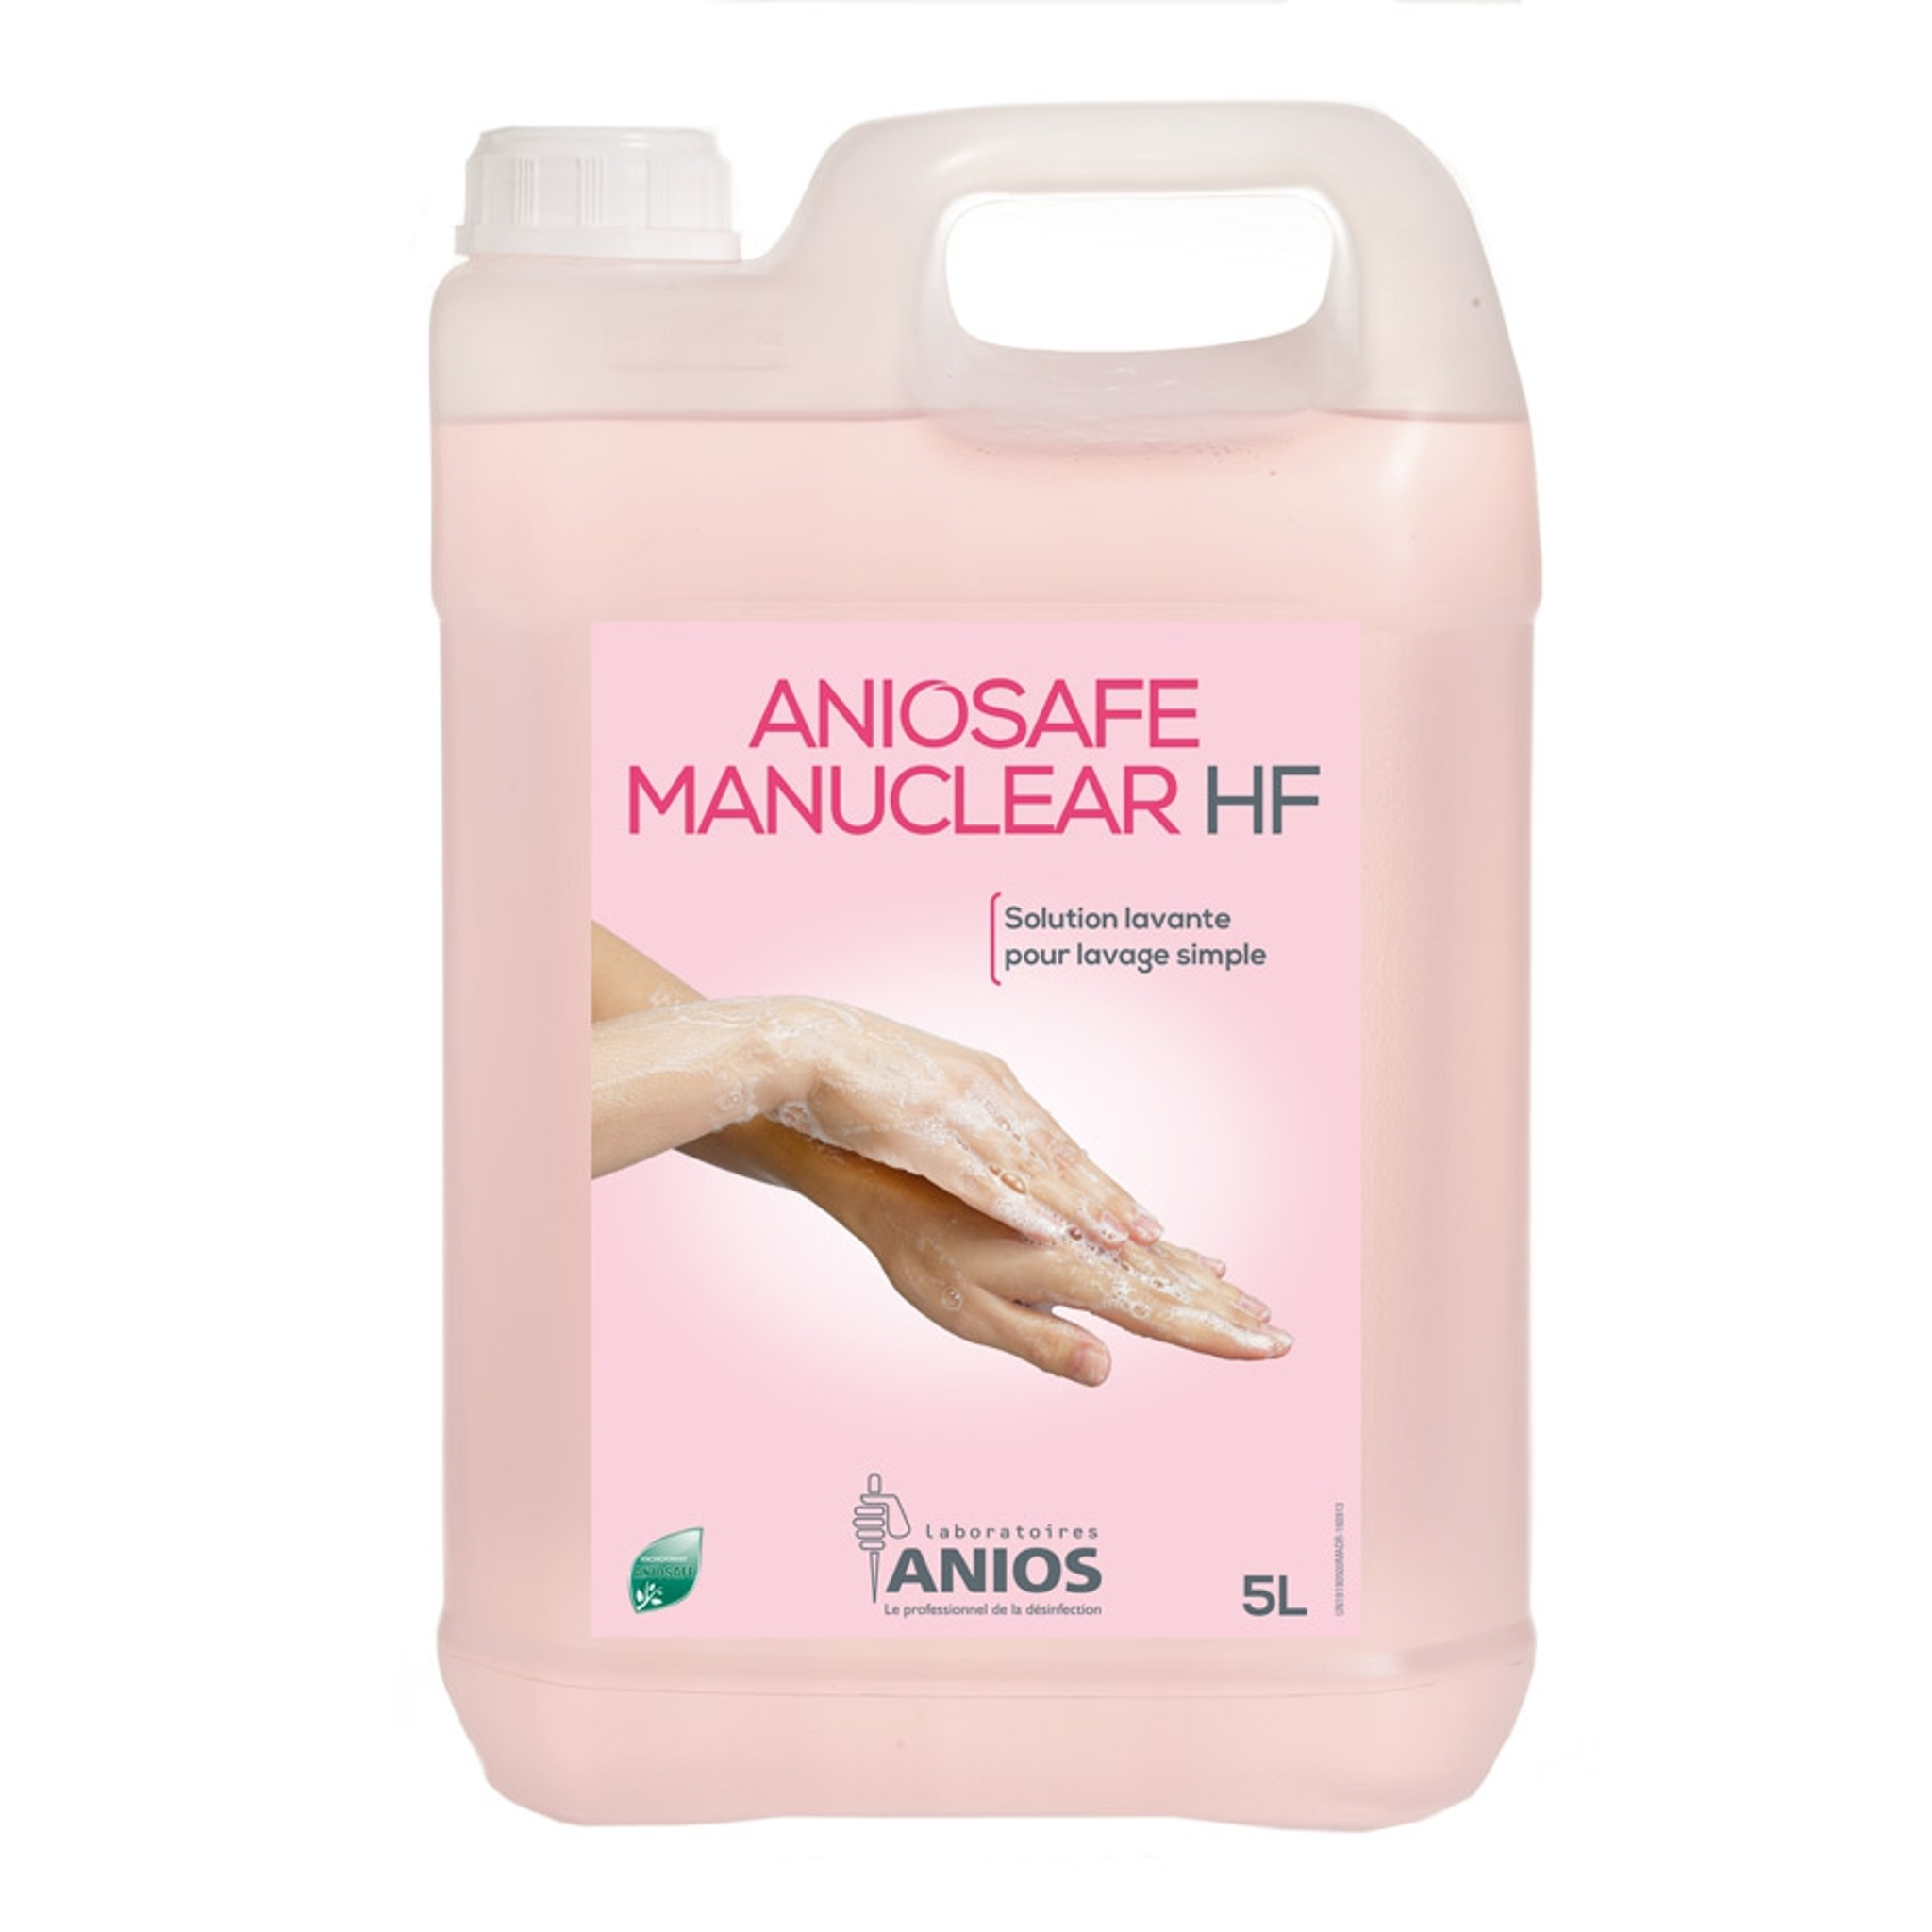 Aniosafe Manuclear HF - parfumé et coloré - Différents formats - Anios Anios